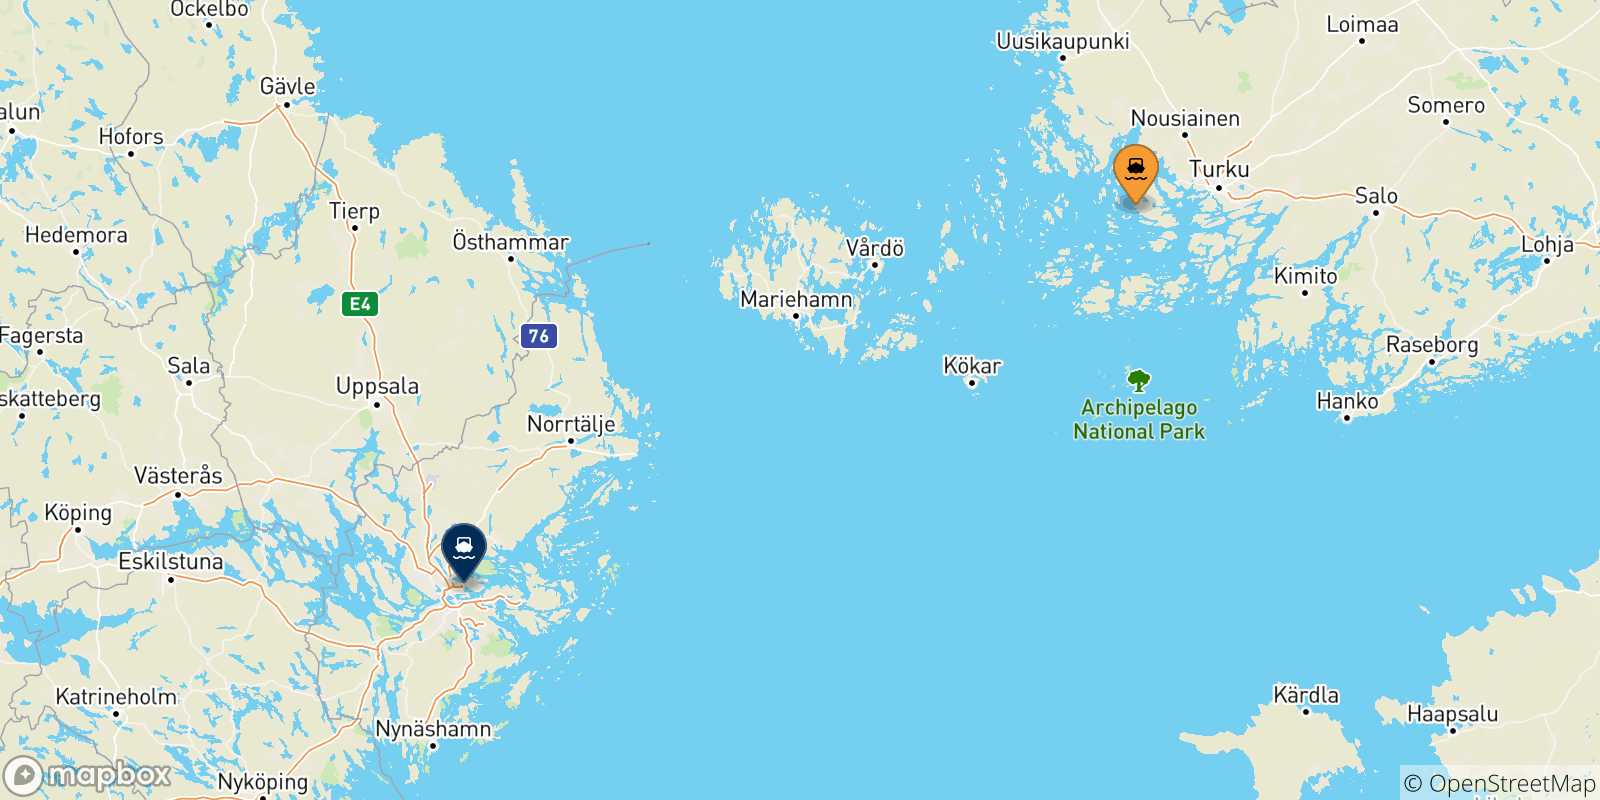 Mappa delle possibili rotte tra Turku e la Svezia